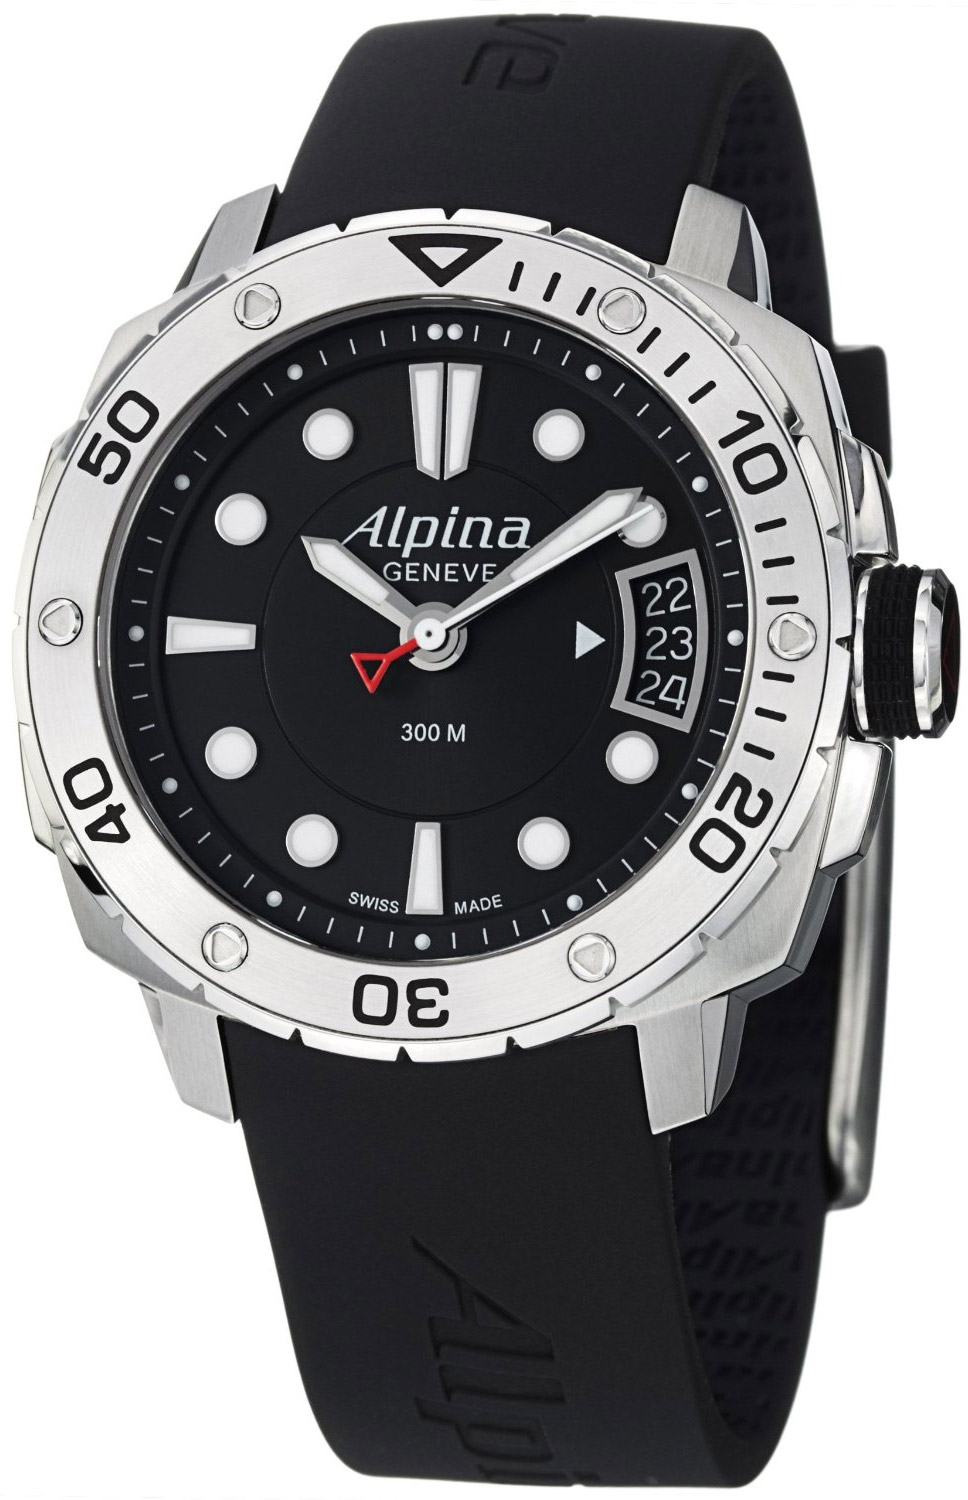 Alpina часы. Часы Alpina al372x4s26. Часы Alpina extreme Diver 30 ATM. Кварцевые часы Альпина. Часы Alpina кварцевые.